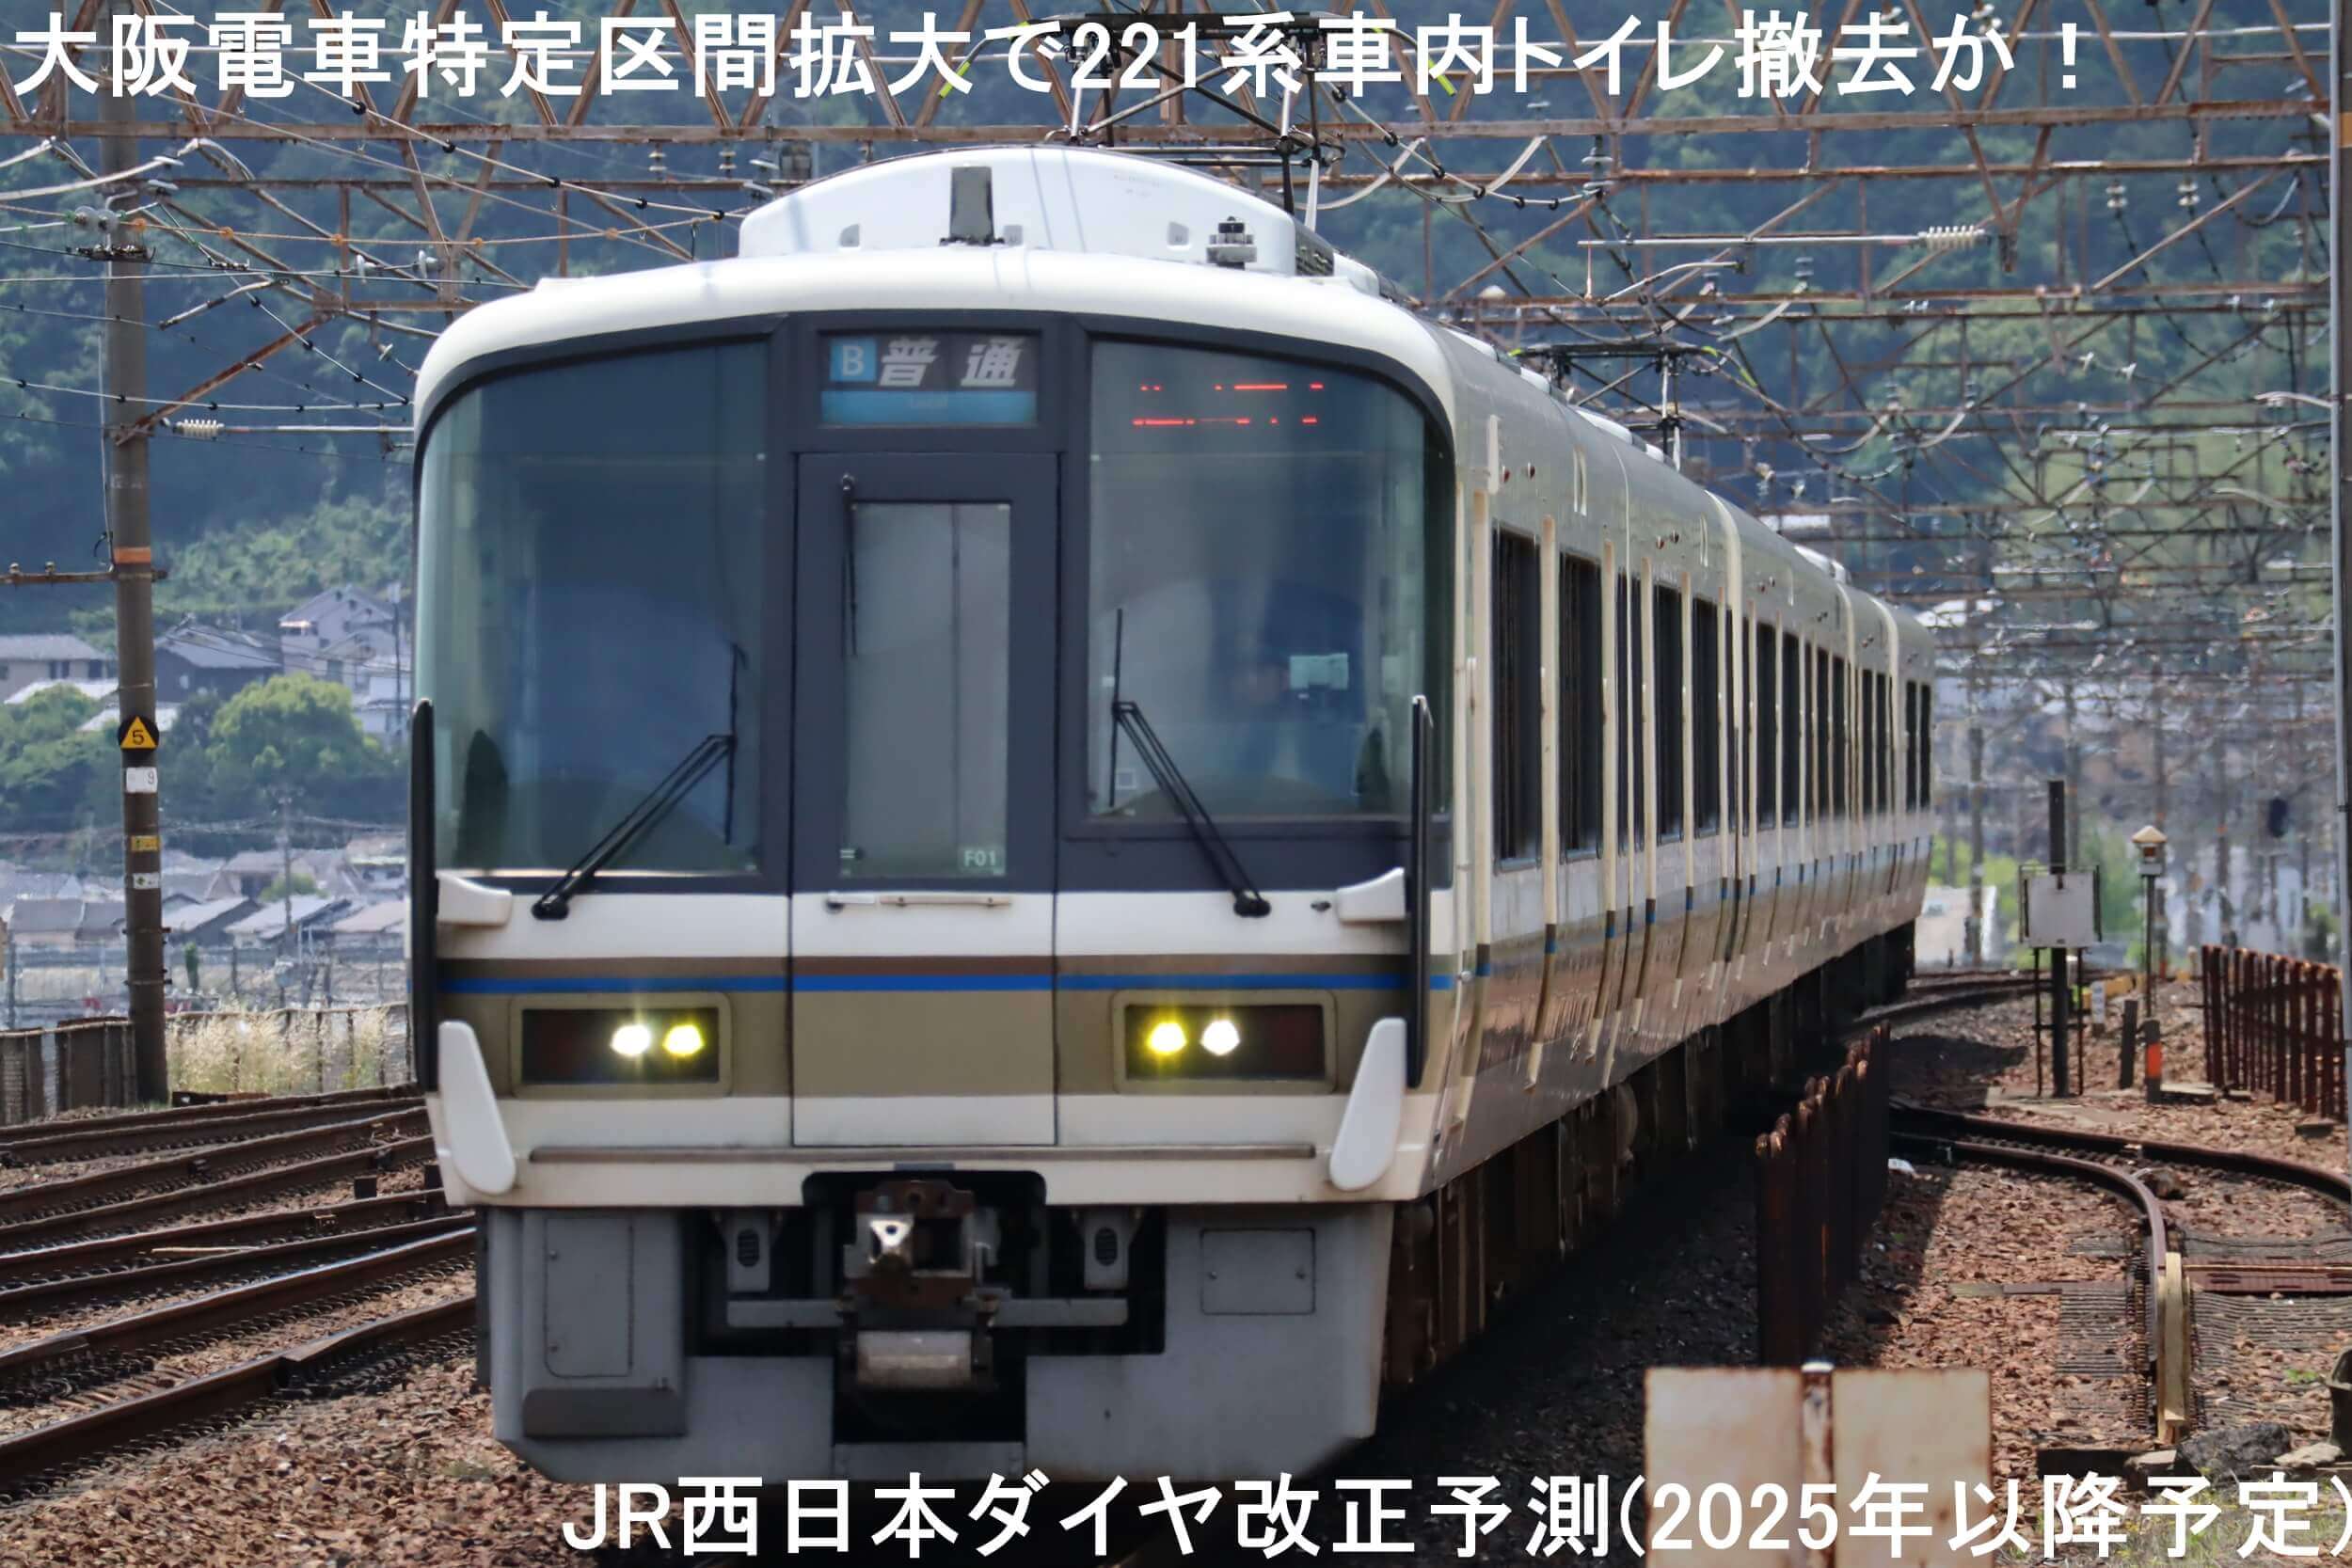 大阪電車特定区間拡大で221系車内トイレ撤去か！　JR西日本ダイヤ改正予測(2025年以降予定)